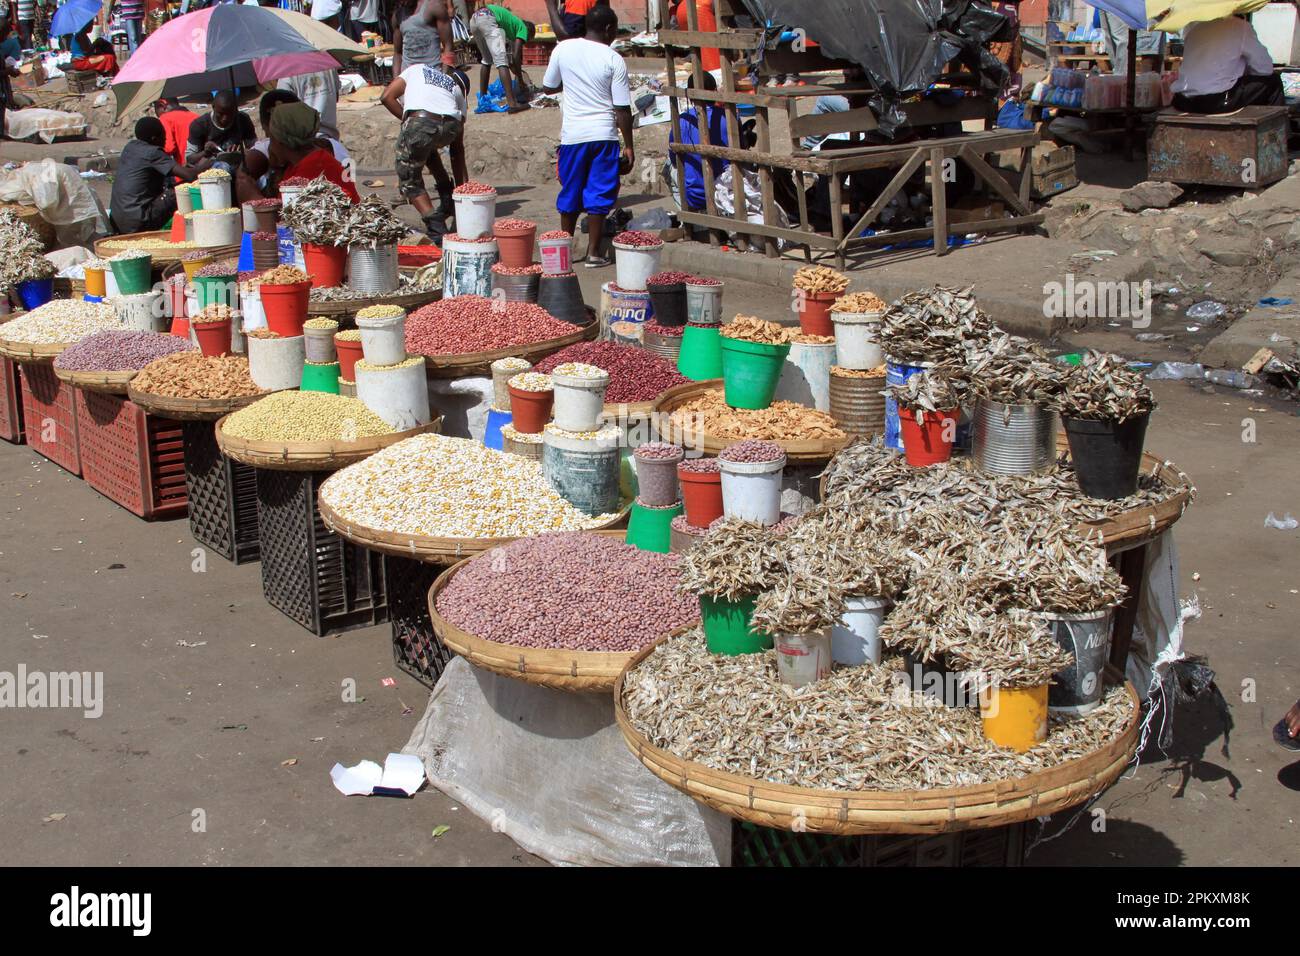 Market, Lusaka, Zambia Stock Photo - Alamy